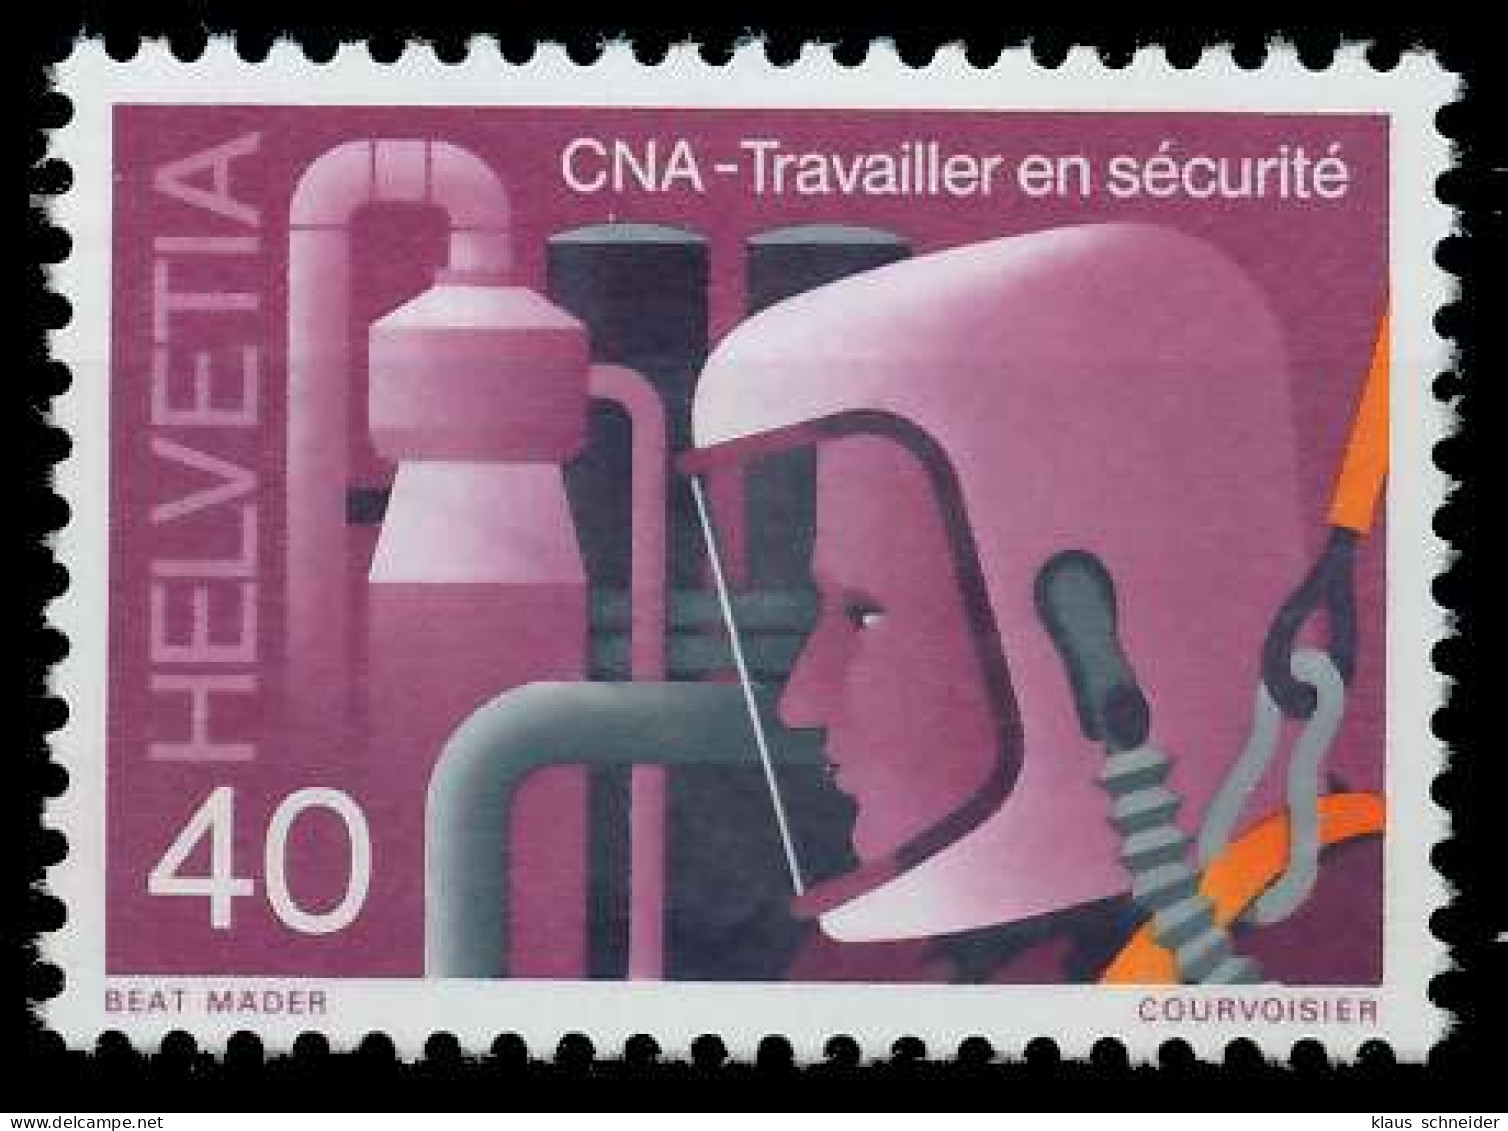 SCHWEIZ 1978 Nr 1135 Postfrisch X66ED5E - Unused Stamps